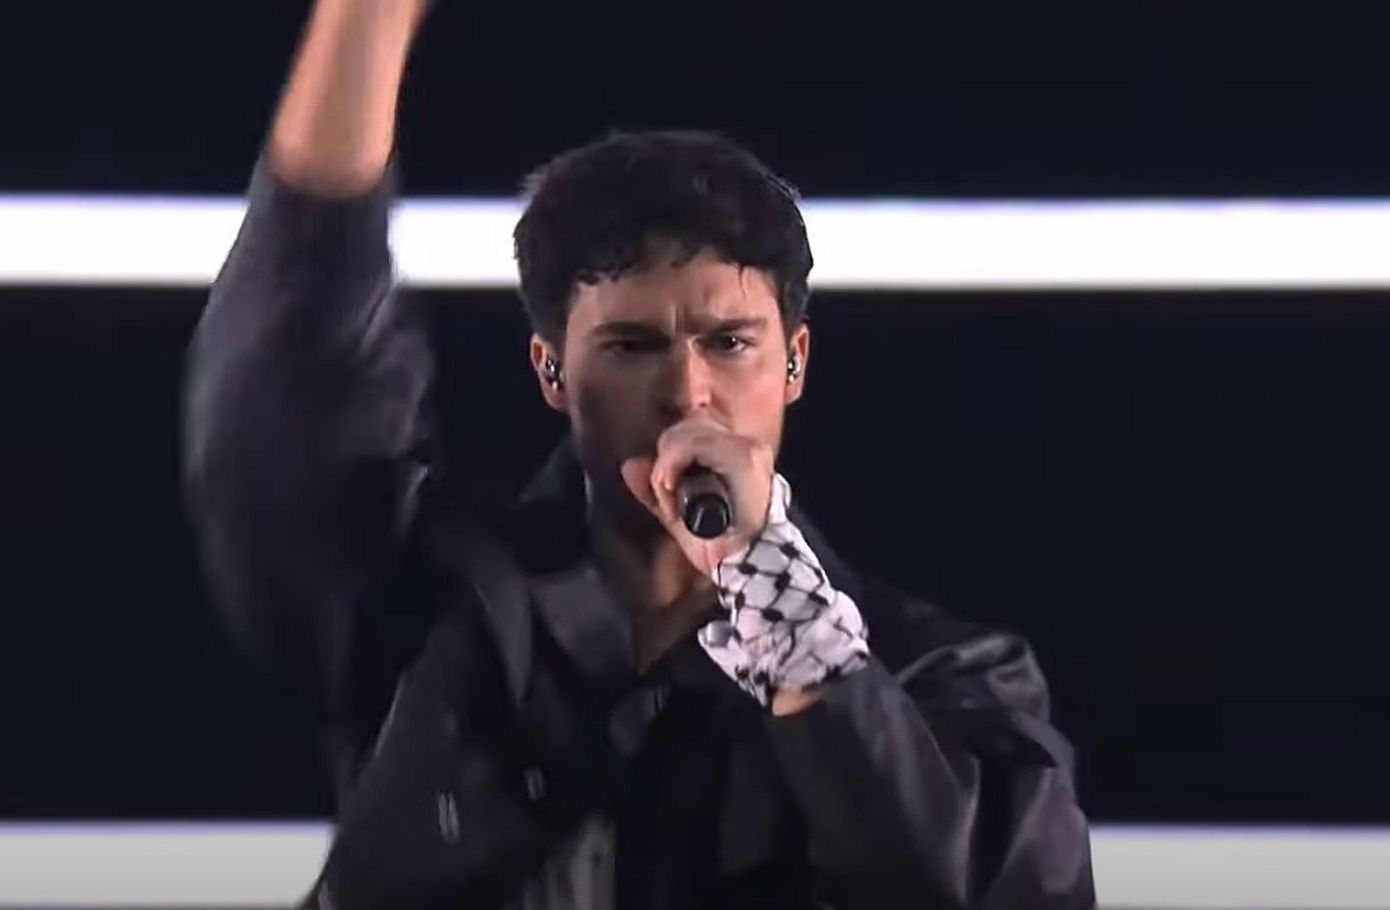 Eurovision 2024: Σουηδός καλλιτέχνης ανέβηκε στη σκηνή με παλαιστινιακό μαντήλι – Η αντίδραση της ΕBU